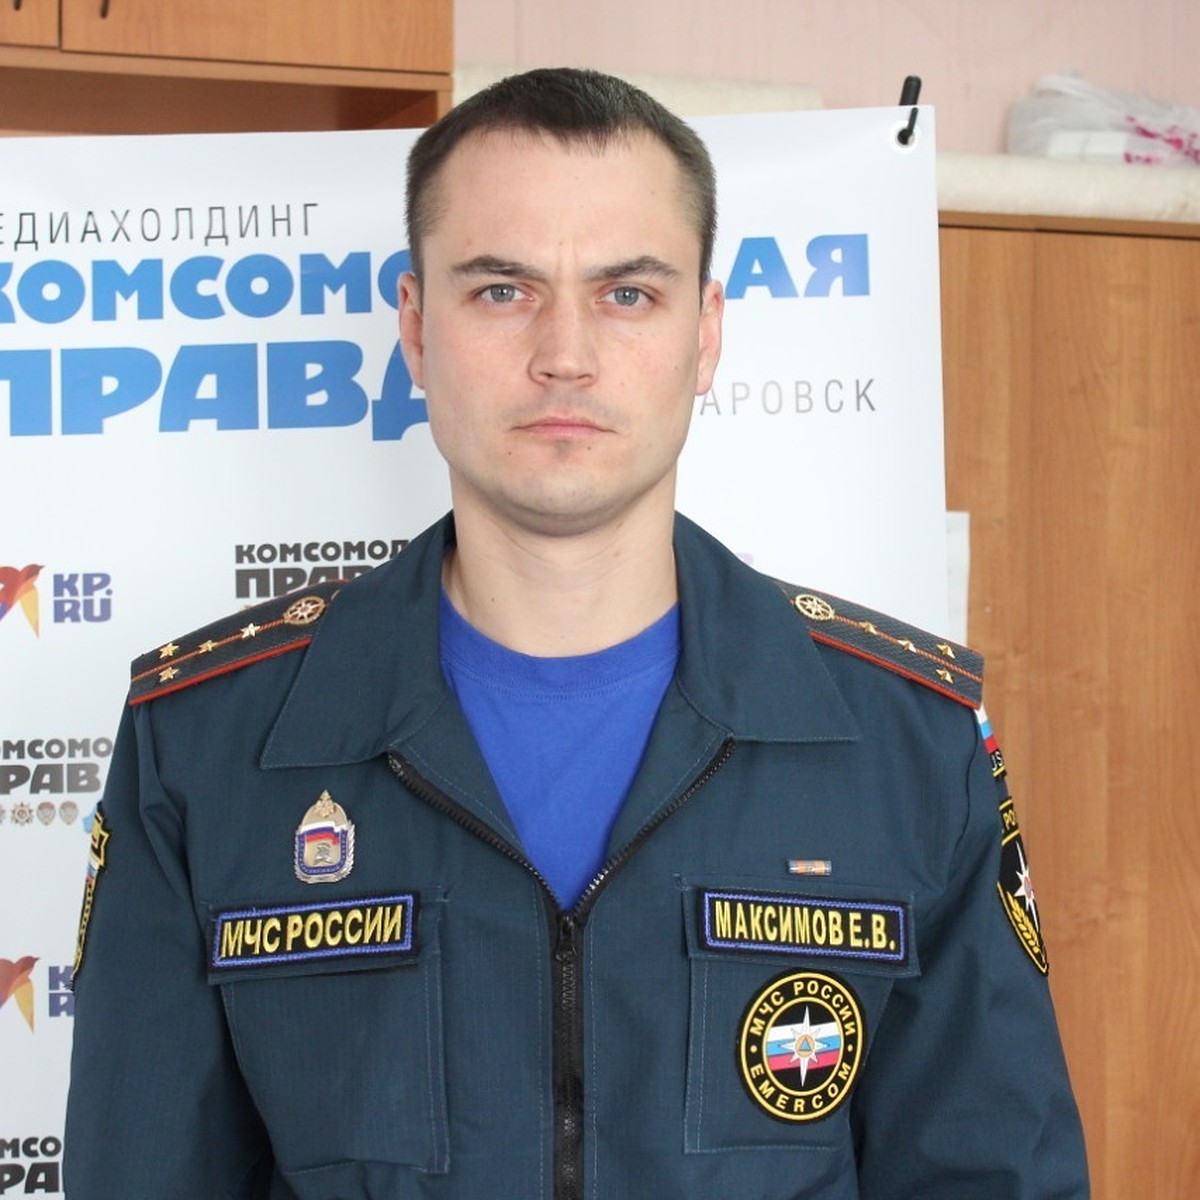 капитан внутренней службы максим владимирович мищенко фото